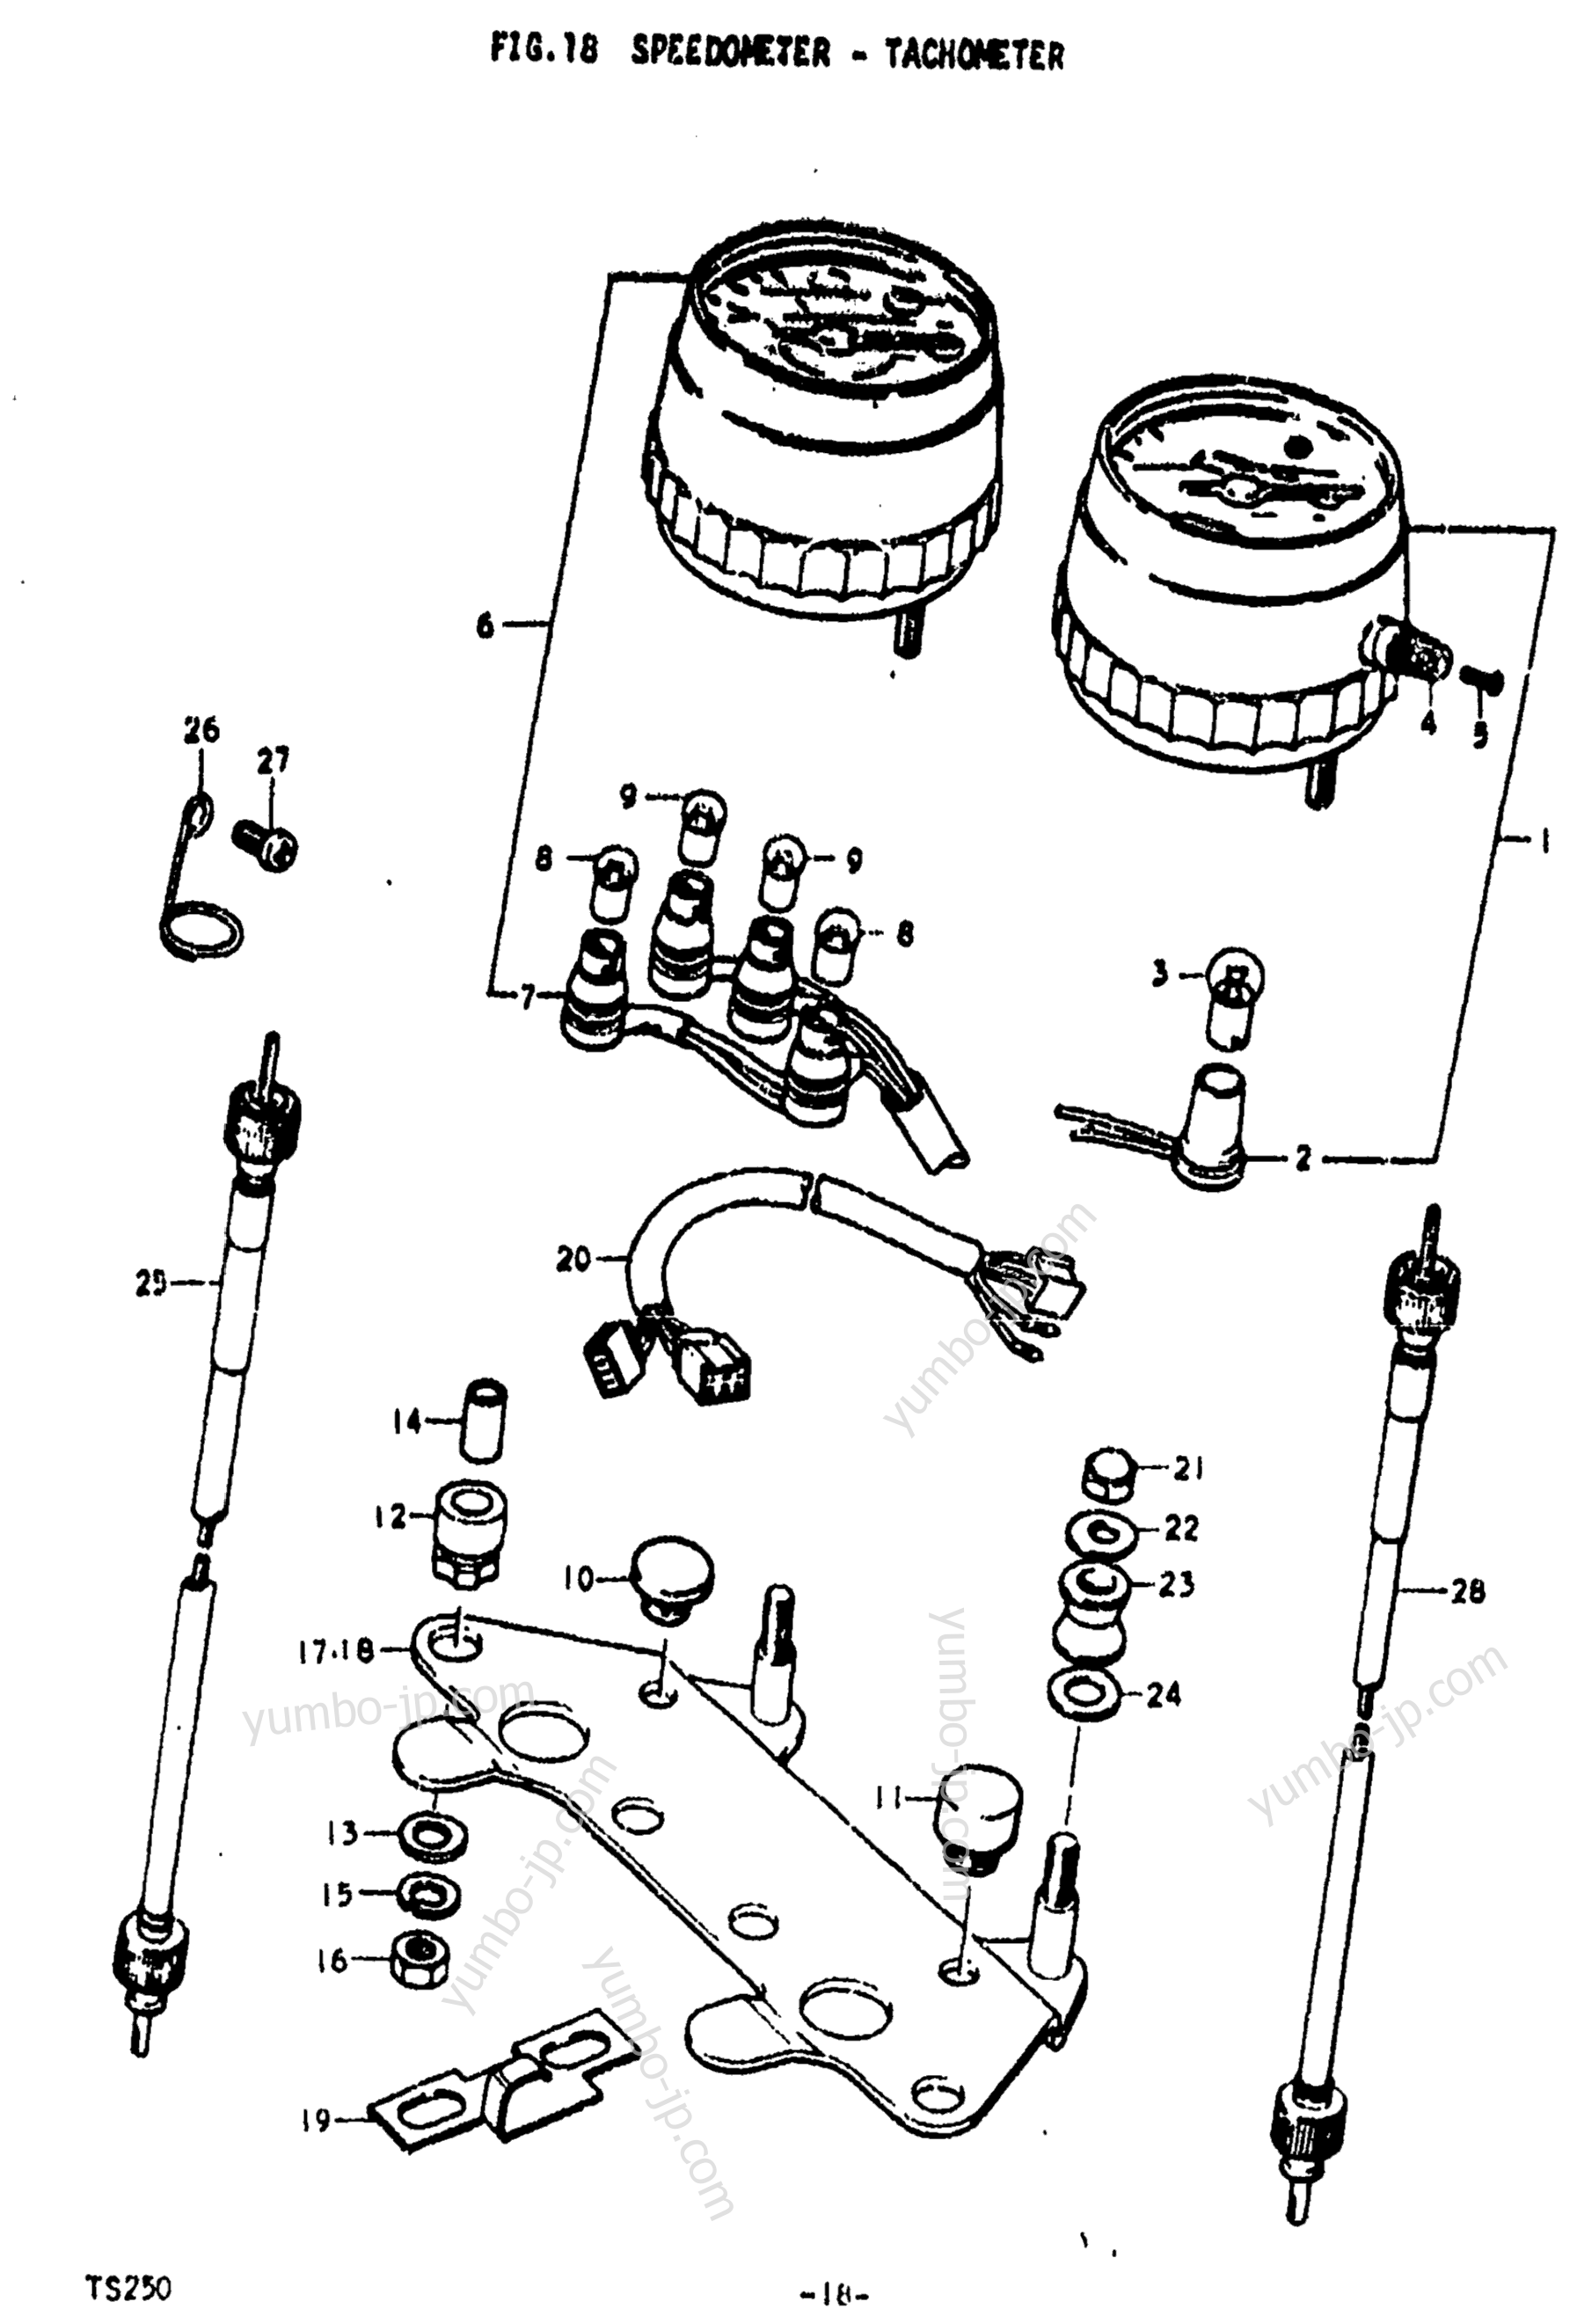 Speedometer - Tachometer for motorcycles SUZUKI TS250 1974 year